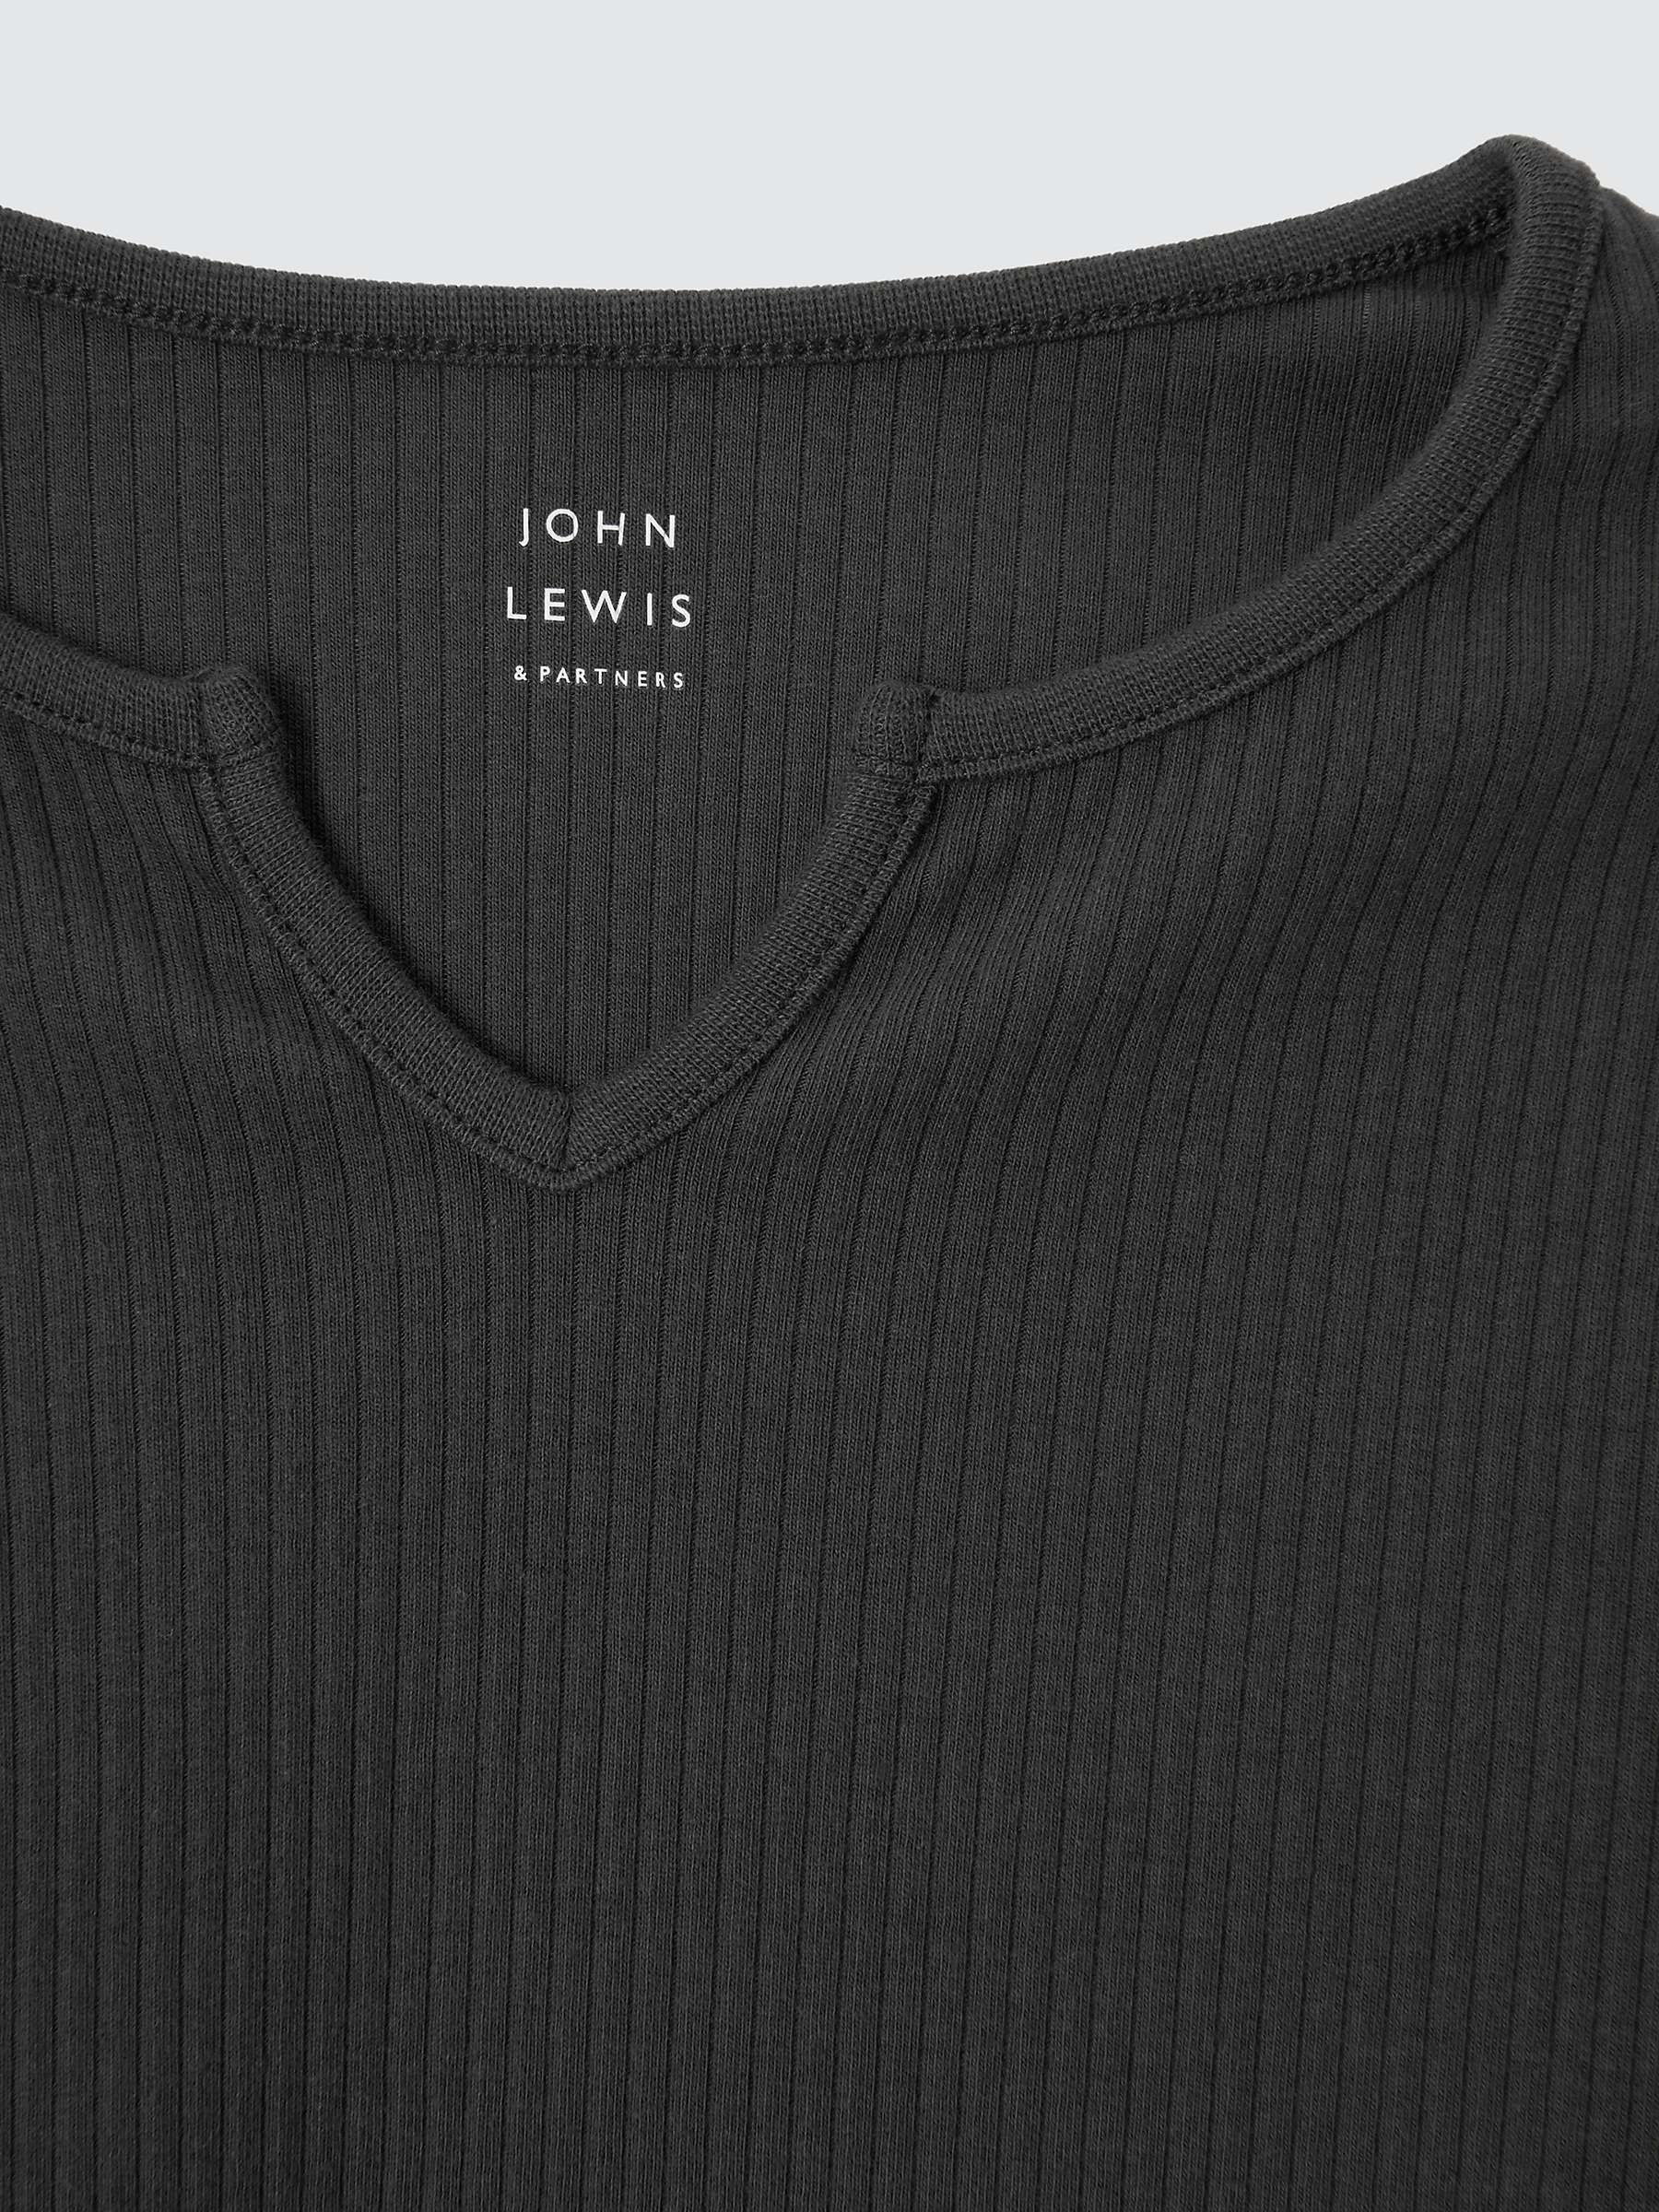 Buy John Lewis Kids' Rib Knit Long Sleeve Top Online at johnlewis.com